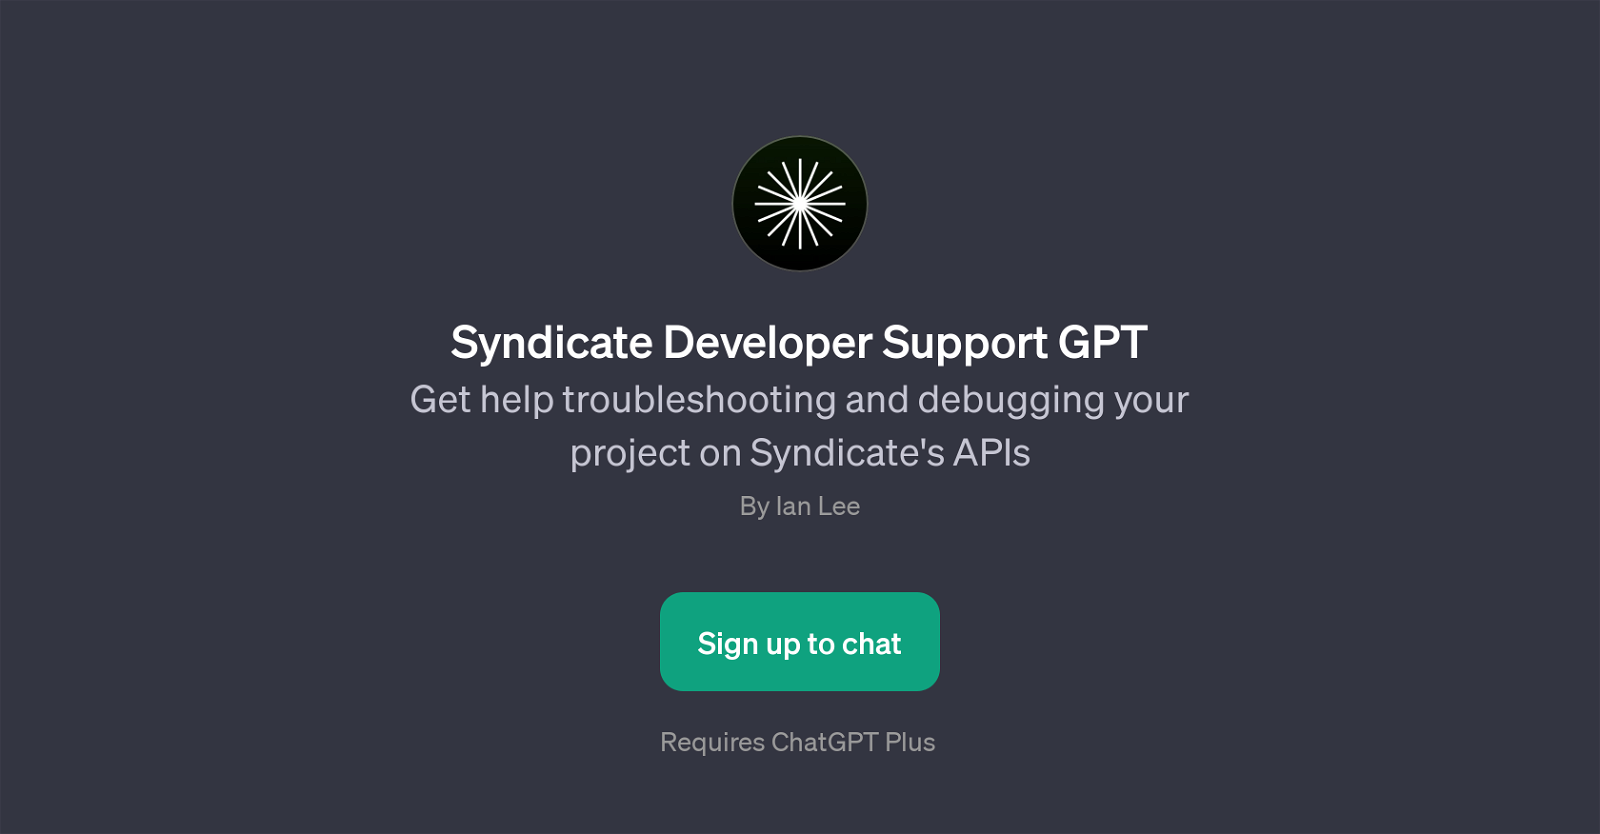 Syndicate Developer Support GPT website